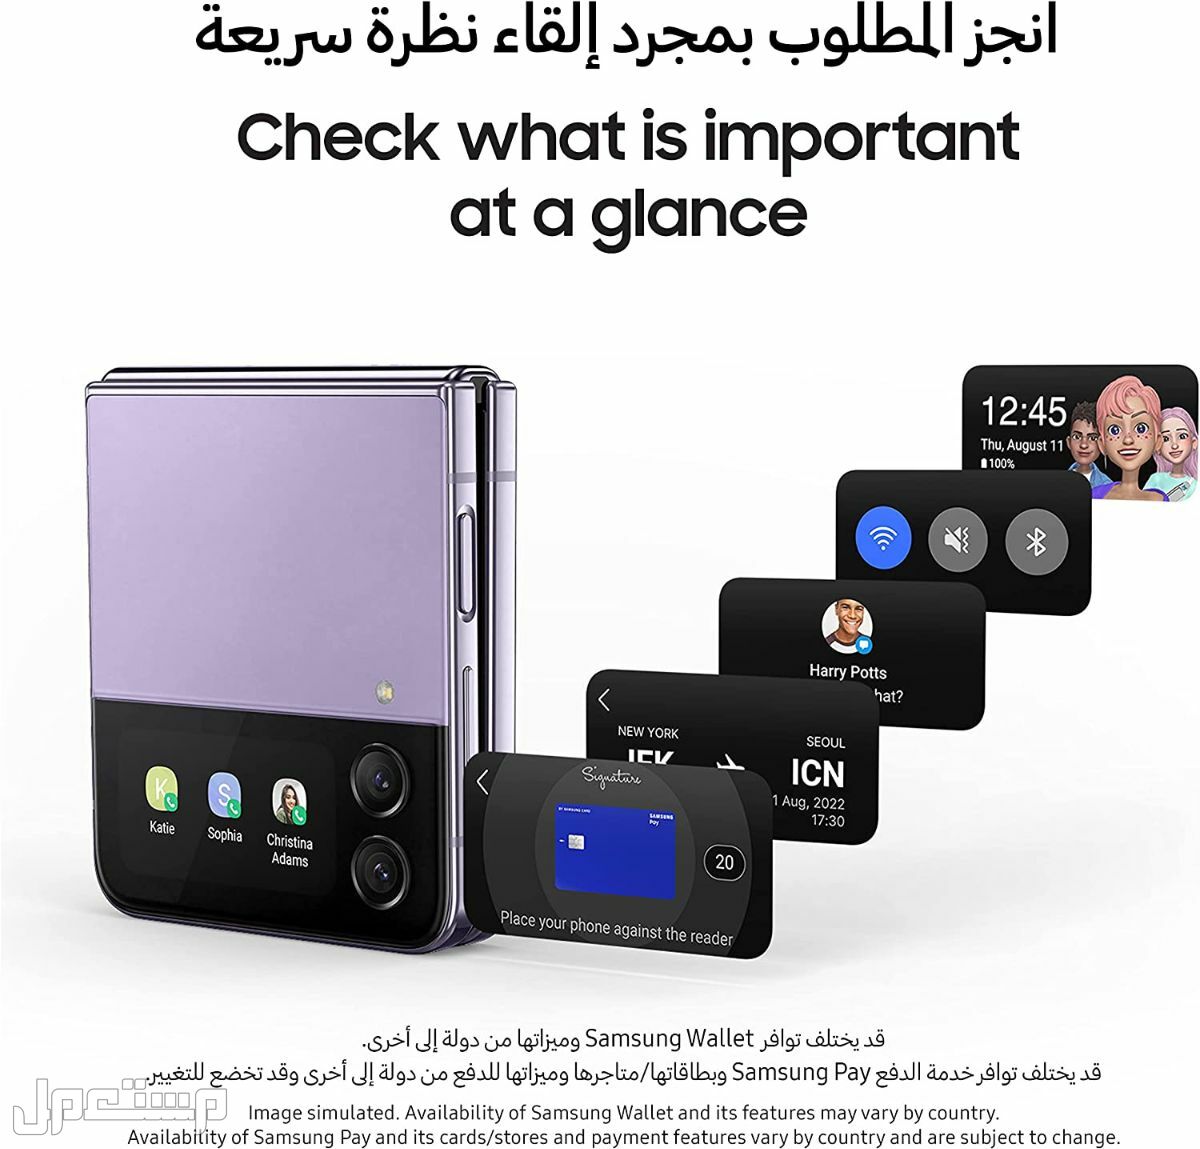 جوال جلاكسي: تعرف على مواصفات وأسعار وأهم مميزات جوال جلاكسي في قطر هاتف جلاكسي